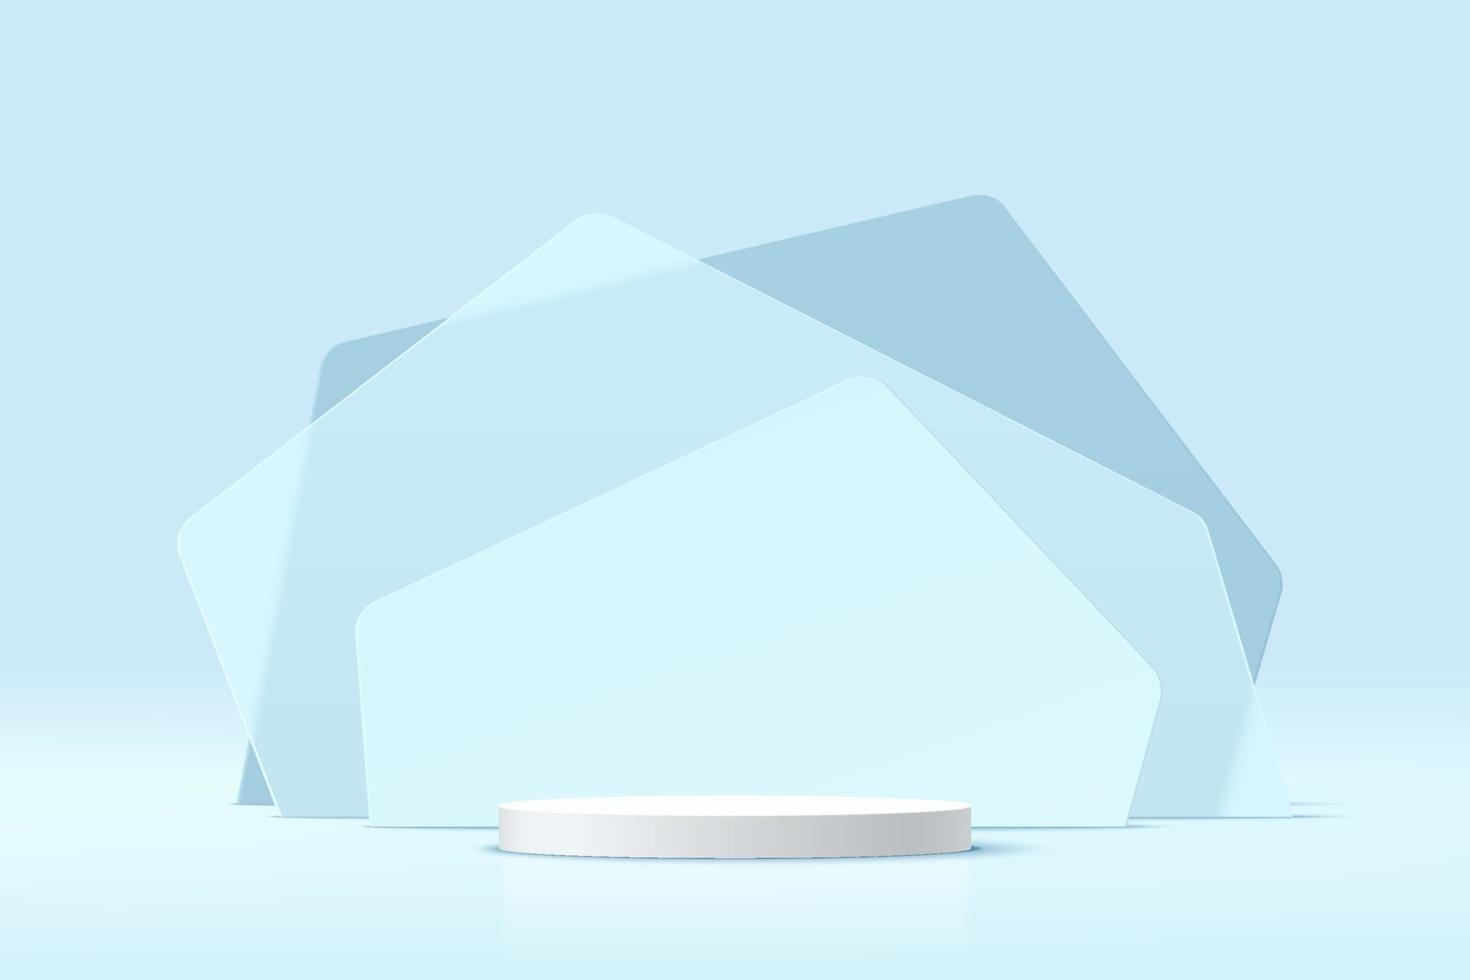 pódio de pedestal de cilindro branco 3d abstrato com pano de fundo de camadas de forma geométrica de vidro azul transparente. plataforma de renderização vetorial com cena de parede mínima azul pastel para apresentação de exibição do produto. vetor